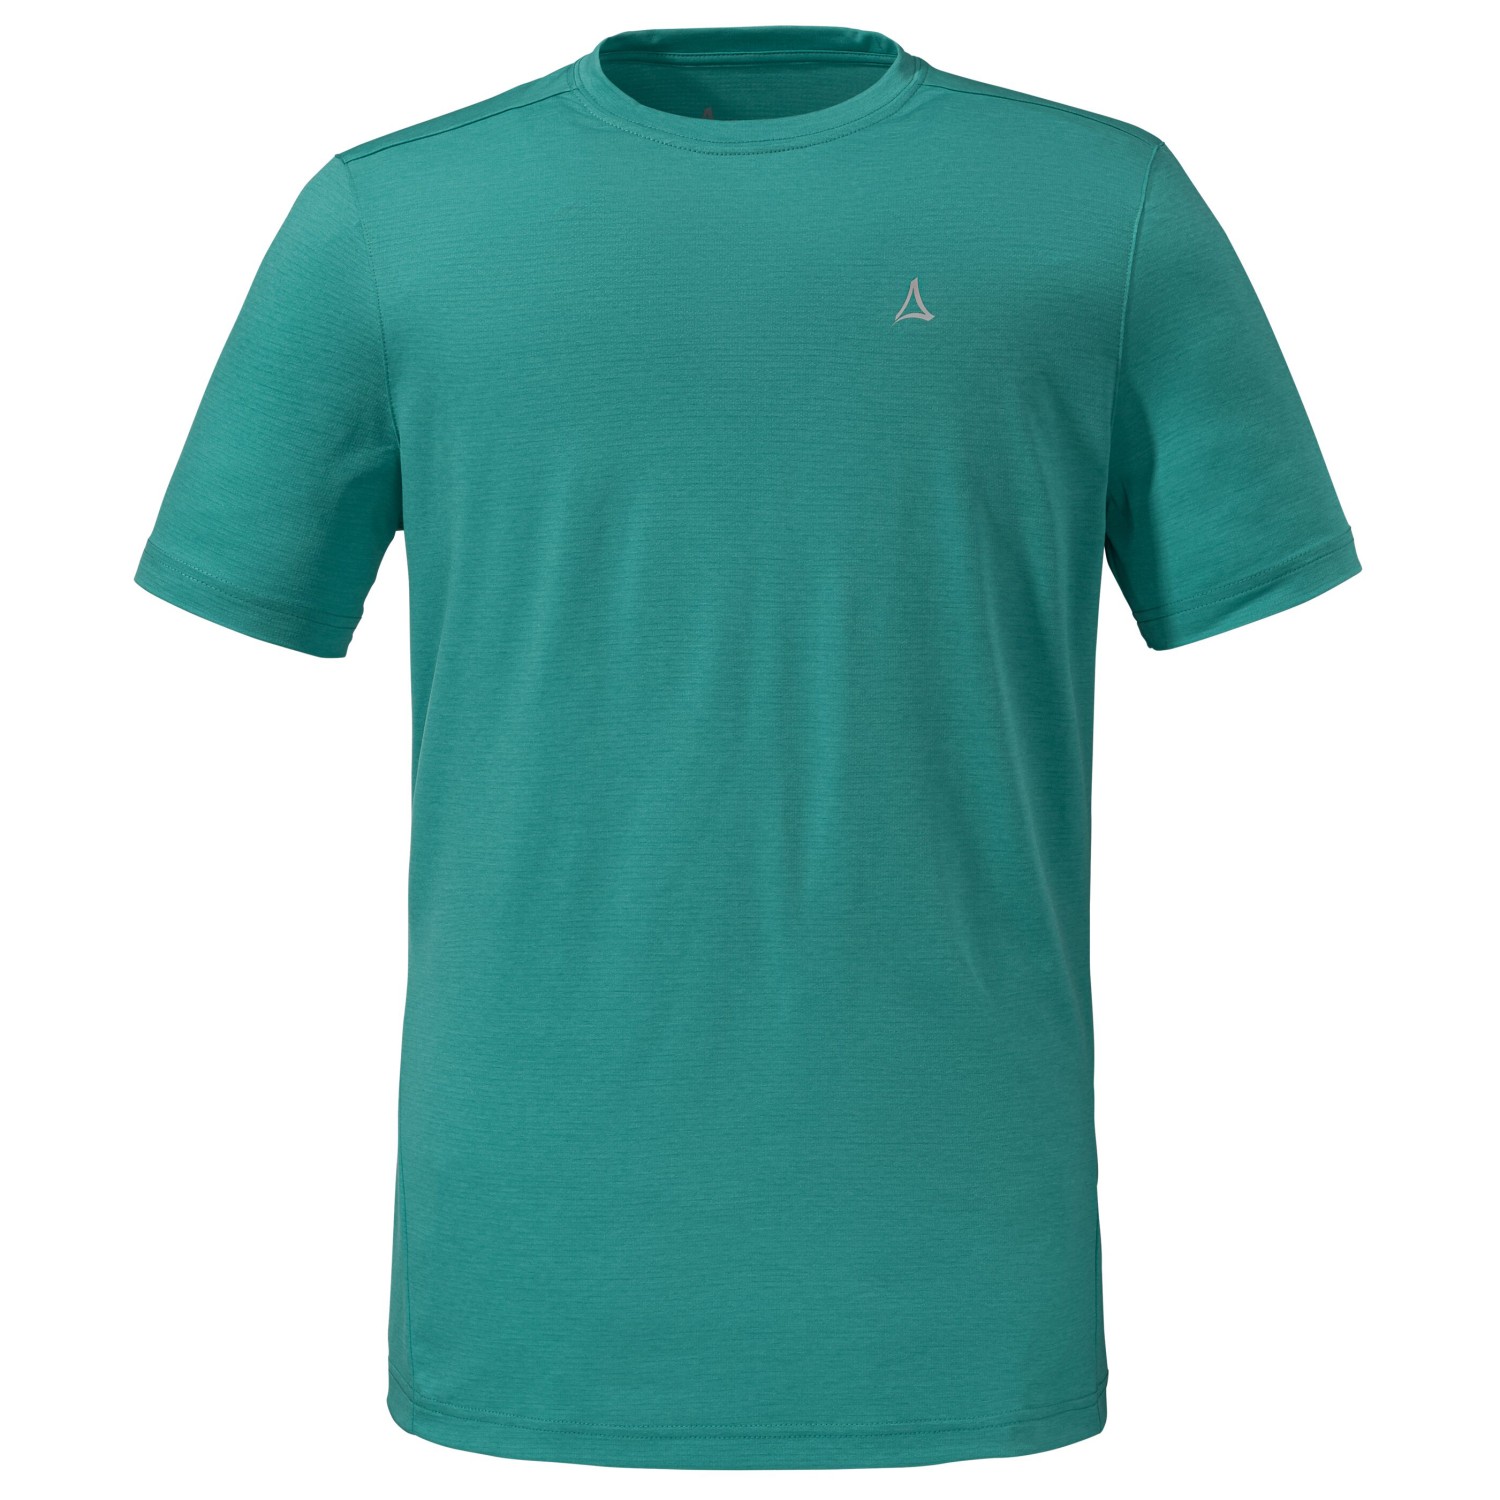 Функциональная рубашка Schöffel Circ T Shirt Tauron, цвет Teal